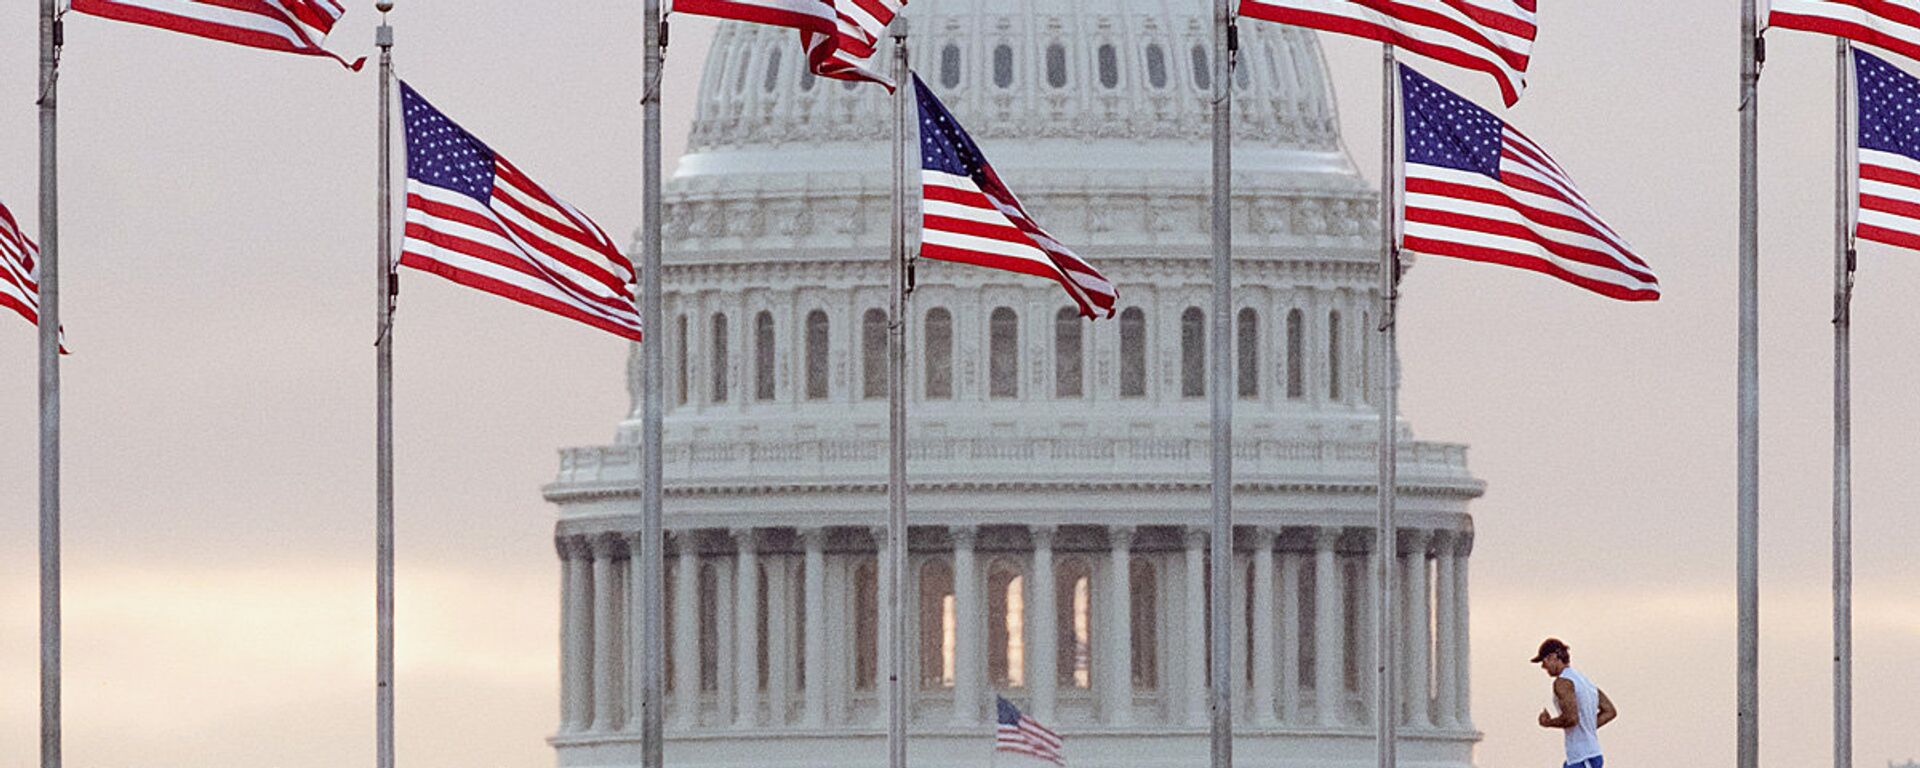 Бегун пересекает площадь перед Капитолием США, проходя мимо флагов, окружающих монумент Вашингтону в Вашингтоне. - Sputnik Узбекистан, 1920, 28.04.2021